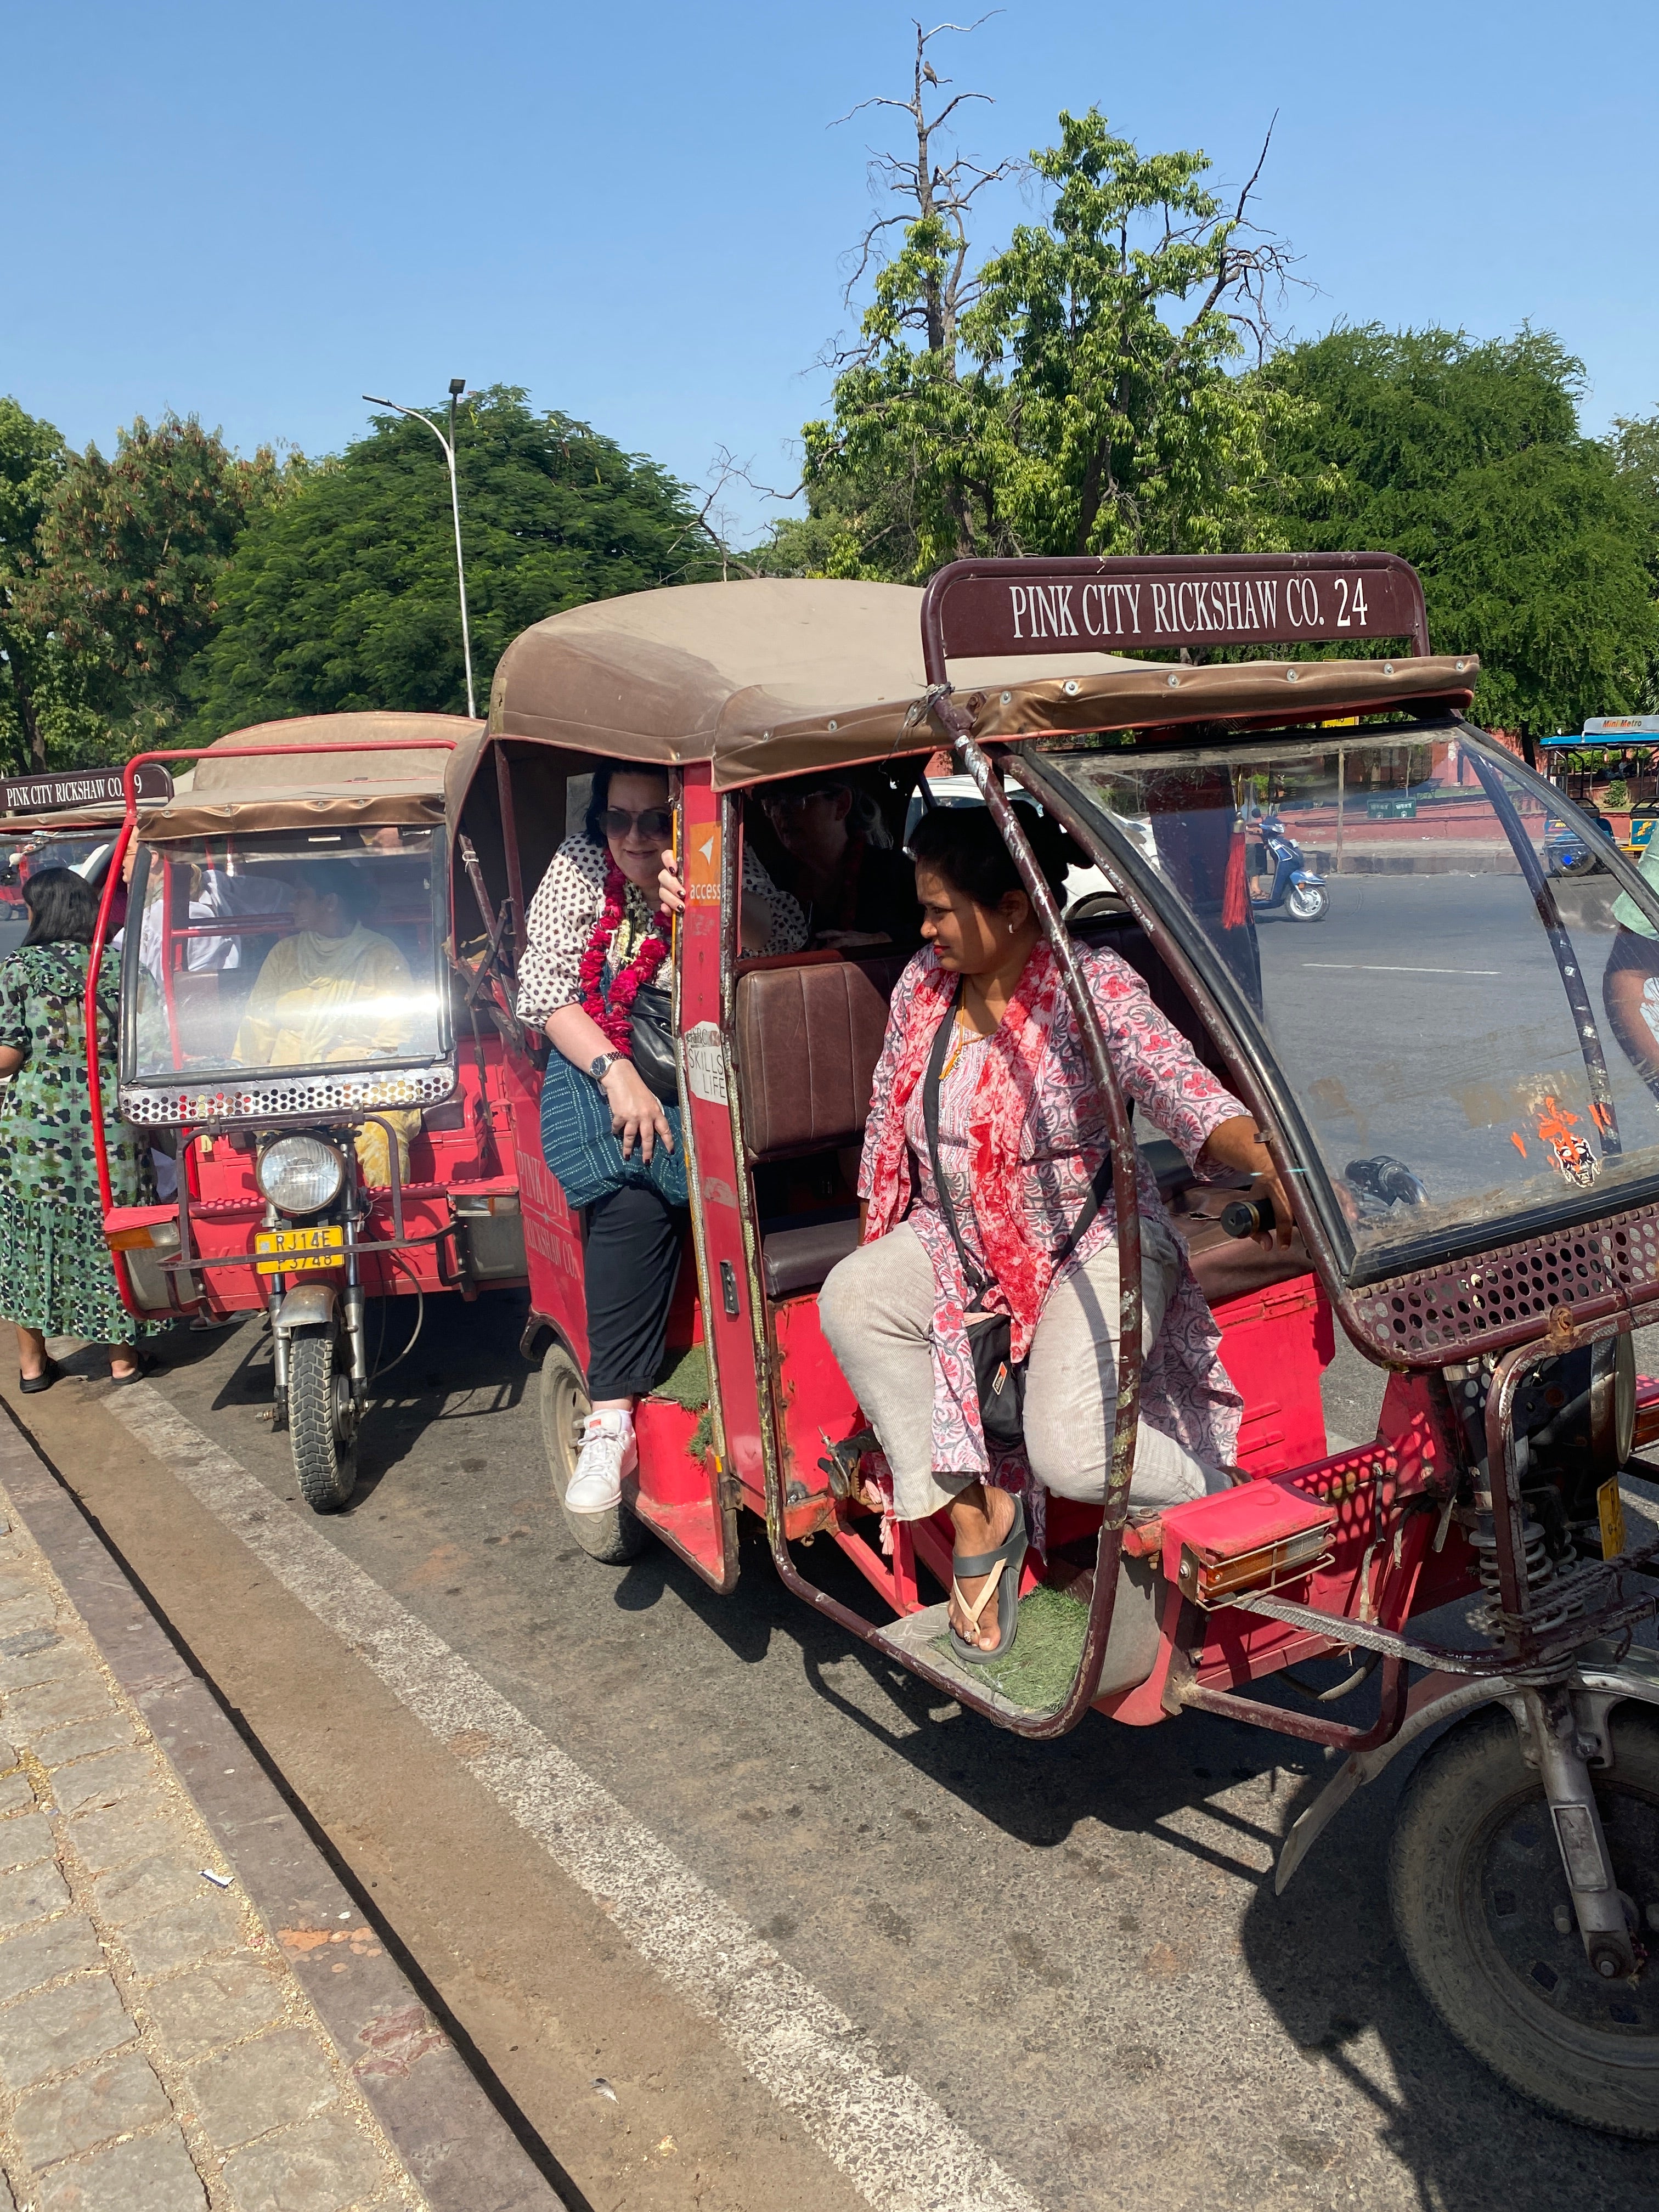 The wonderful Pink City Rickshaw ladies giving us a tour of Jaipur